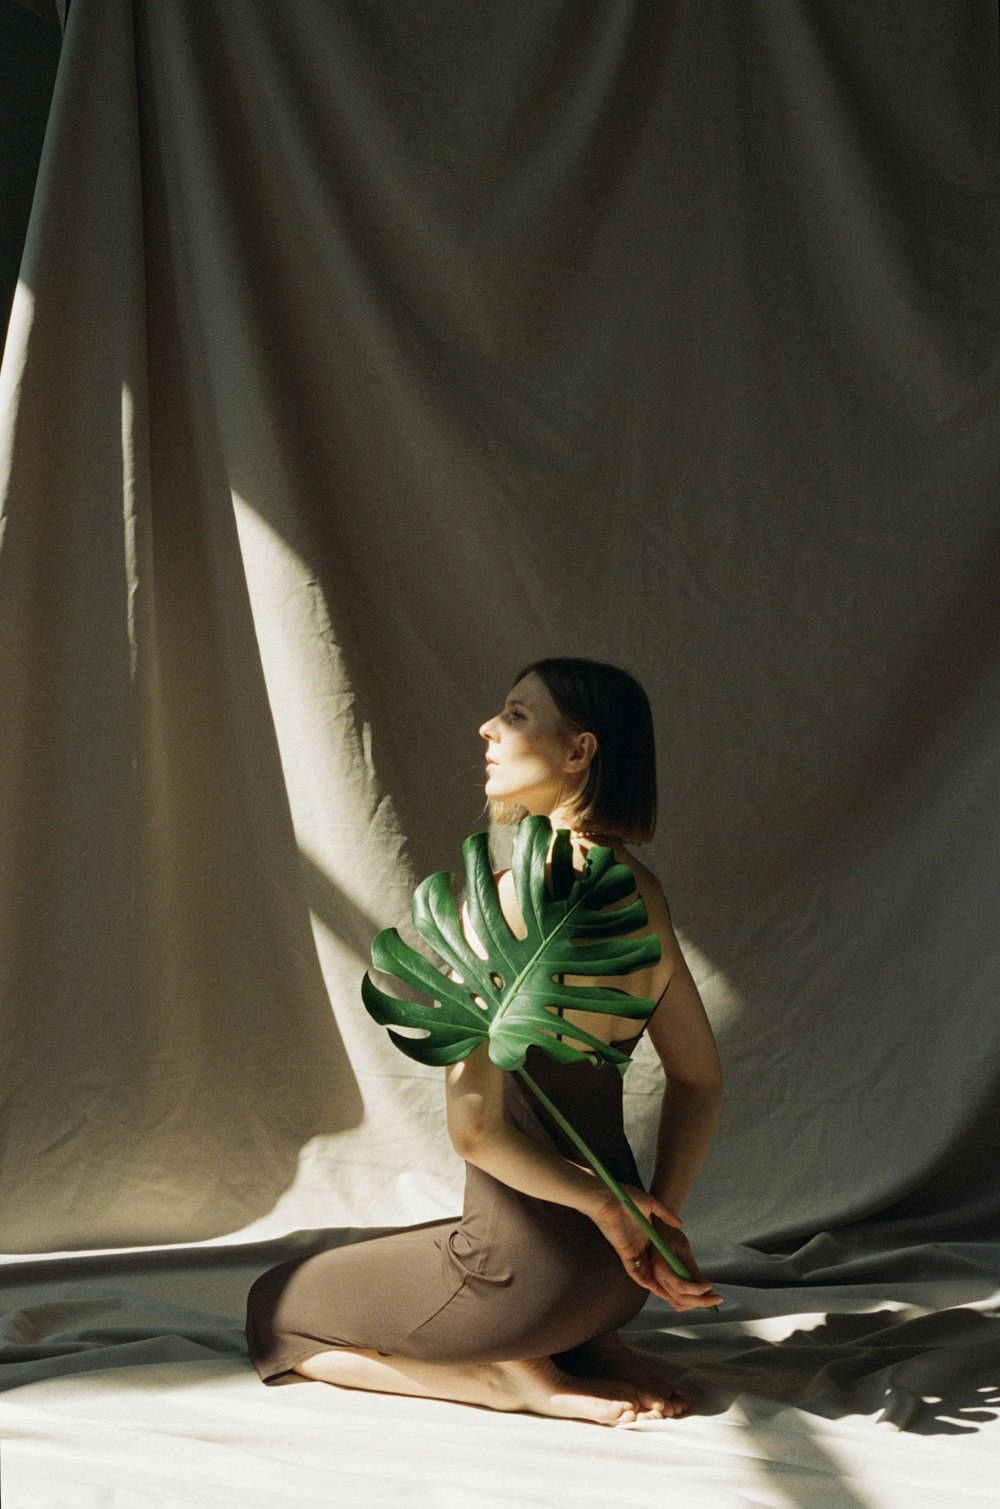 초록색 식물을 들고 땅바닥에 앉아 있는 여성